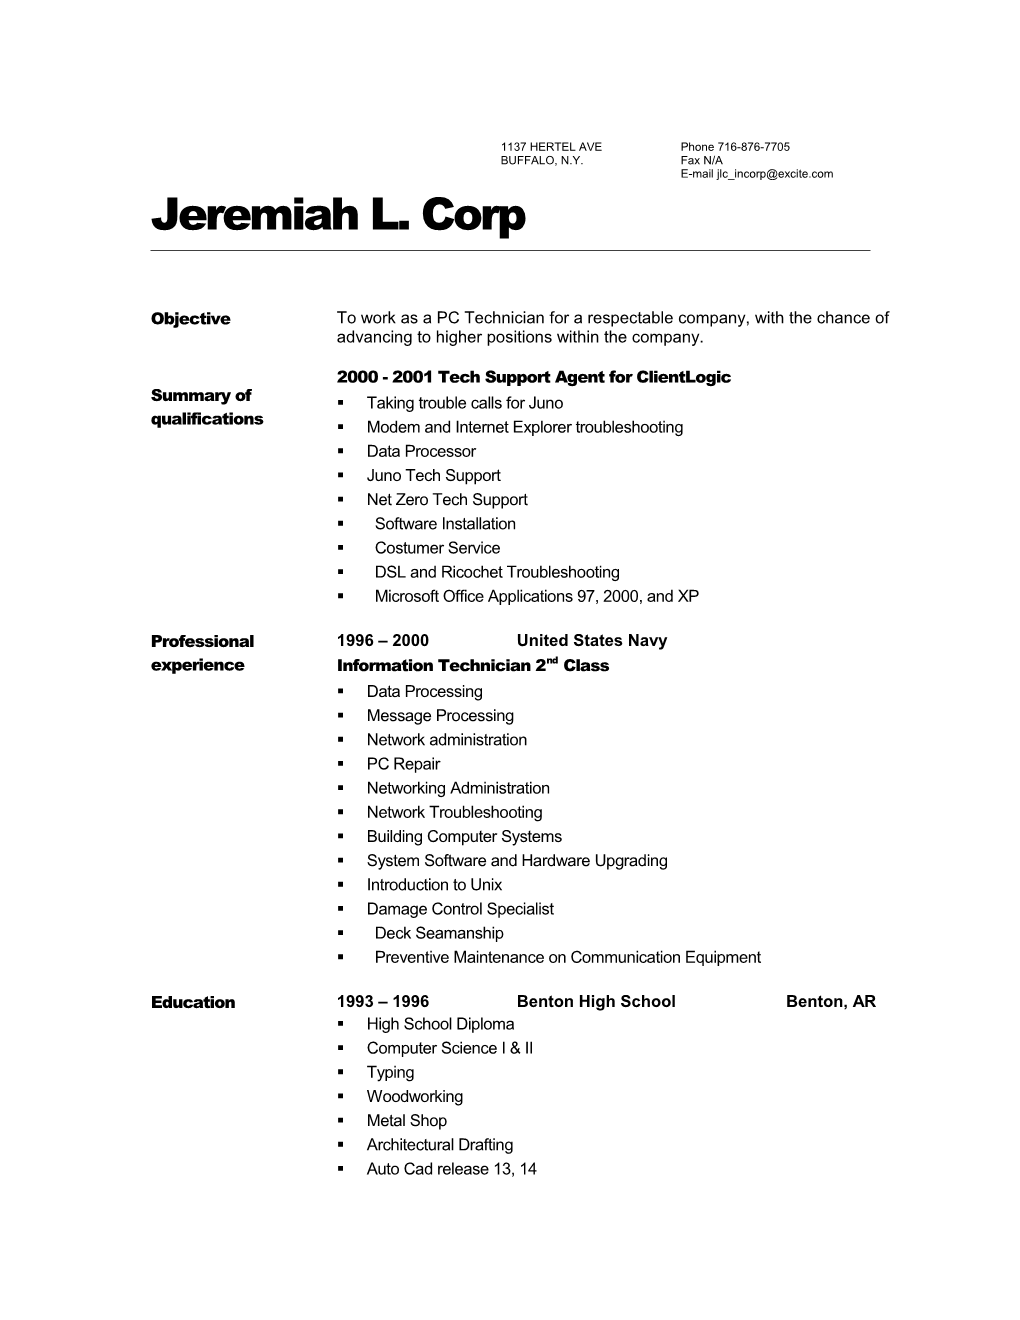 Jeremiah L. Corp